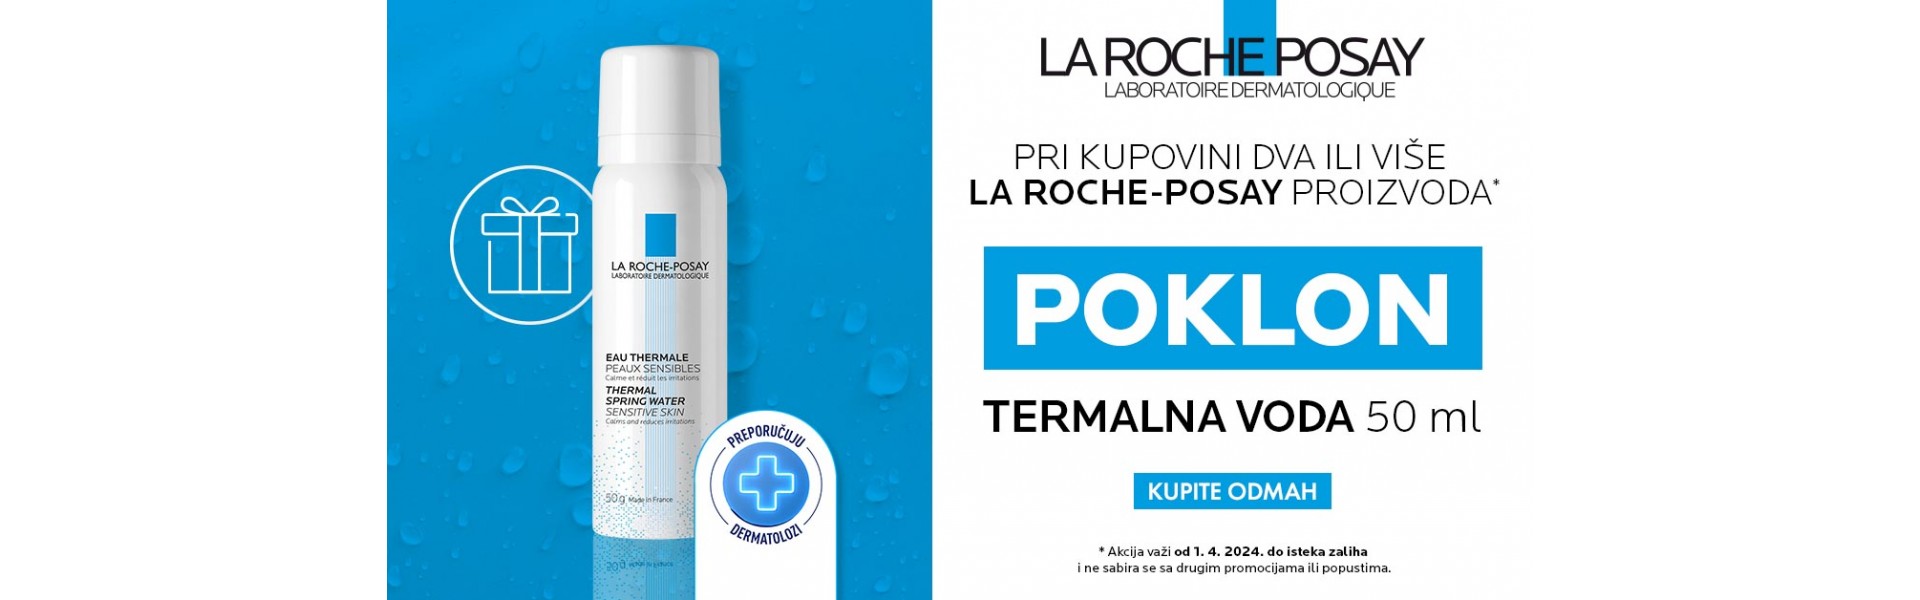 La Roche-Posay poklon akcija Termalna voda